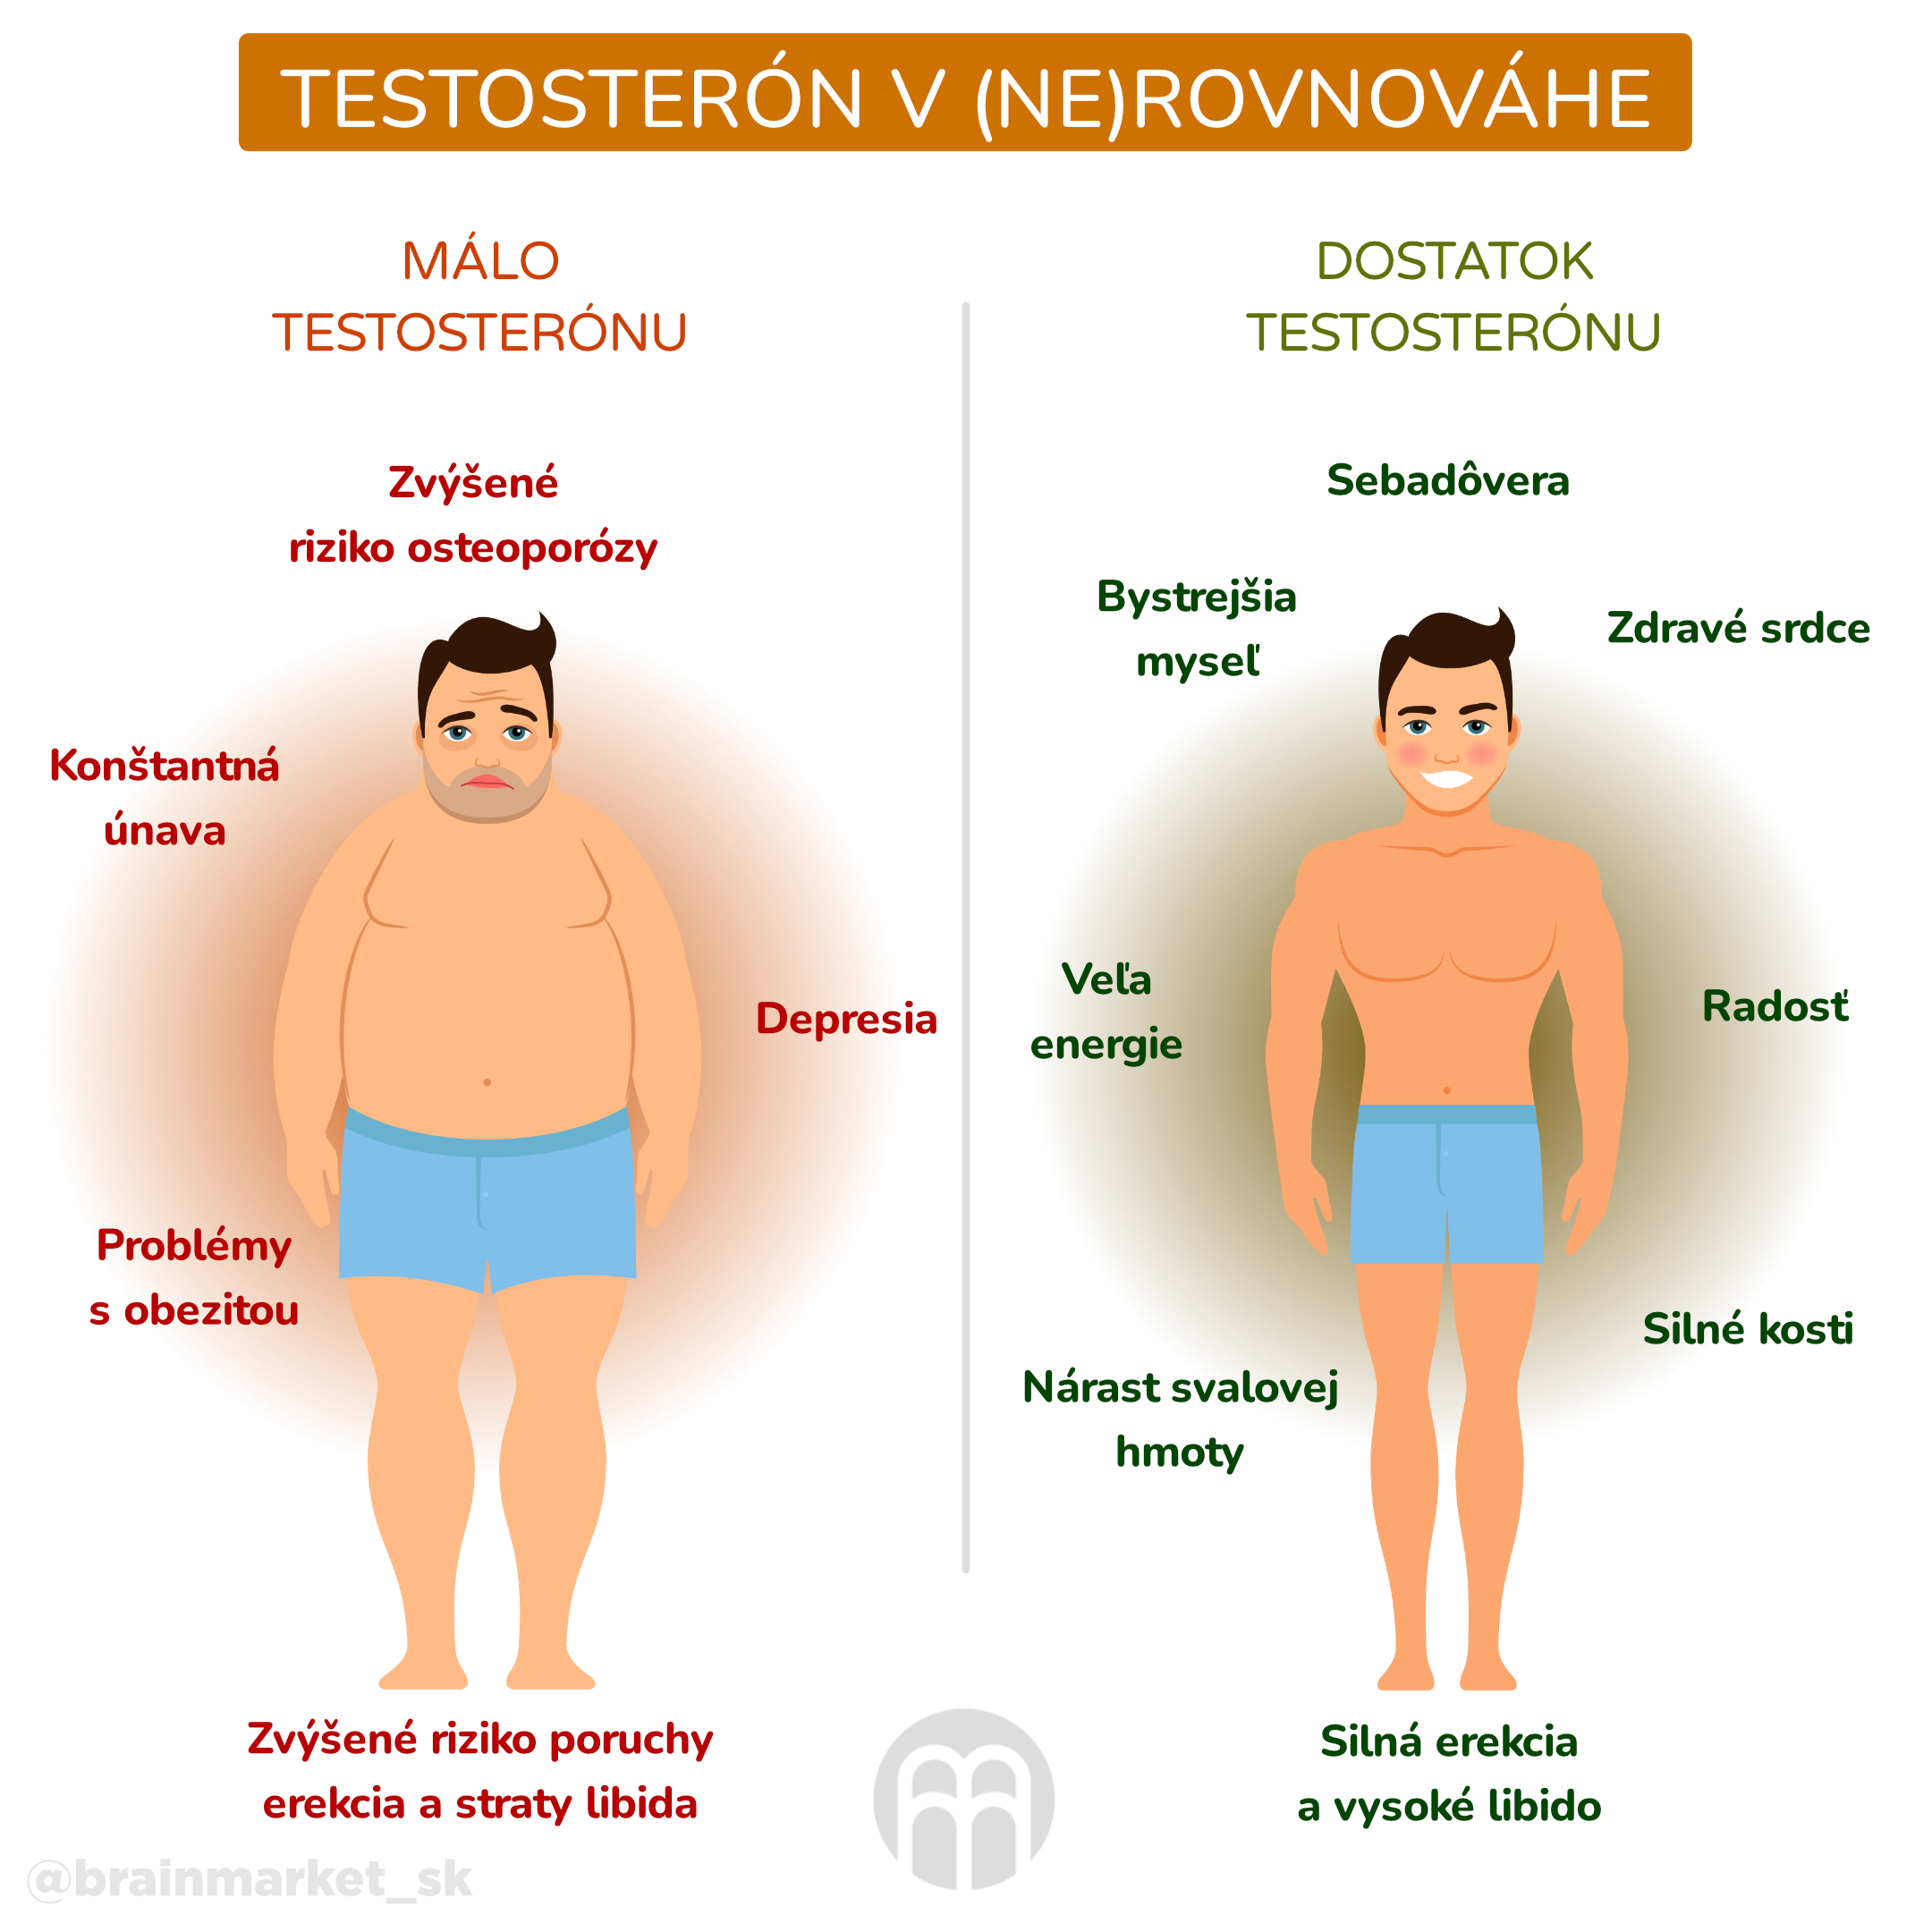 testosteron v ne rovnovaze_infografika_cz